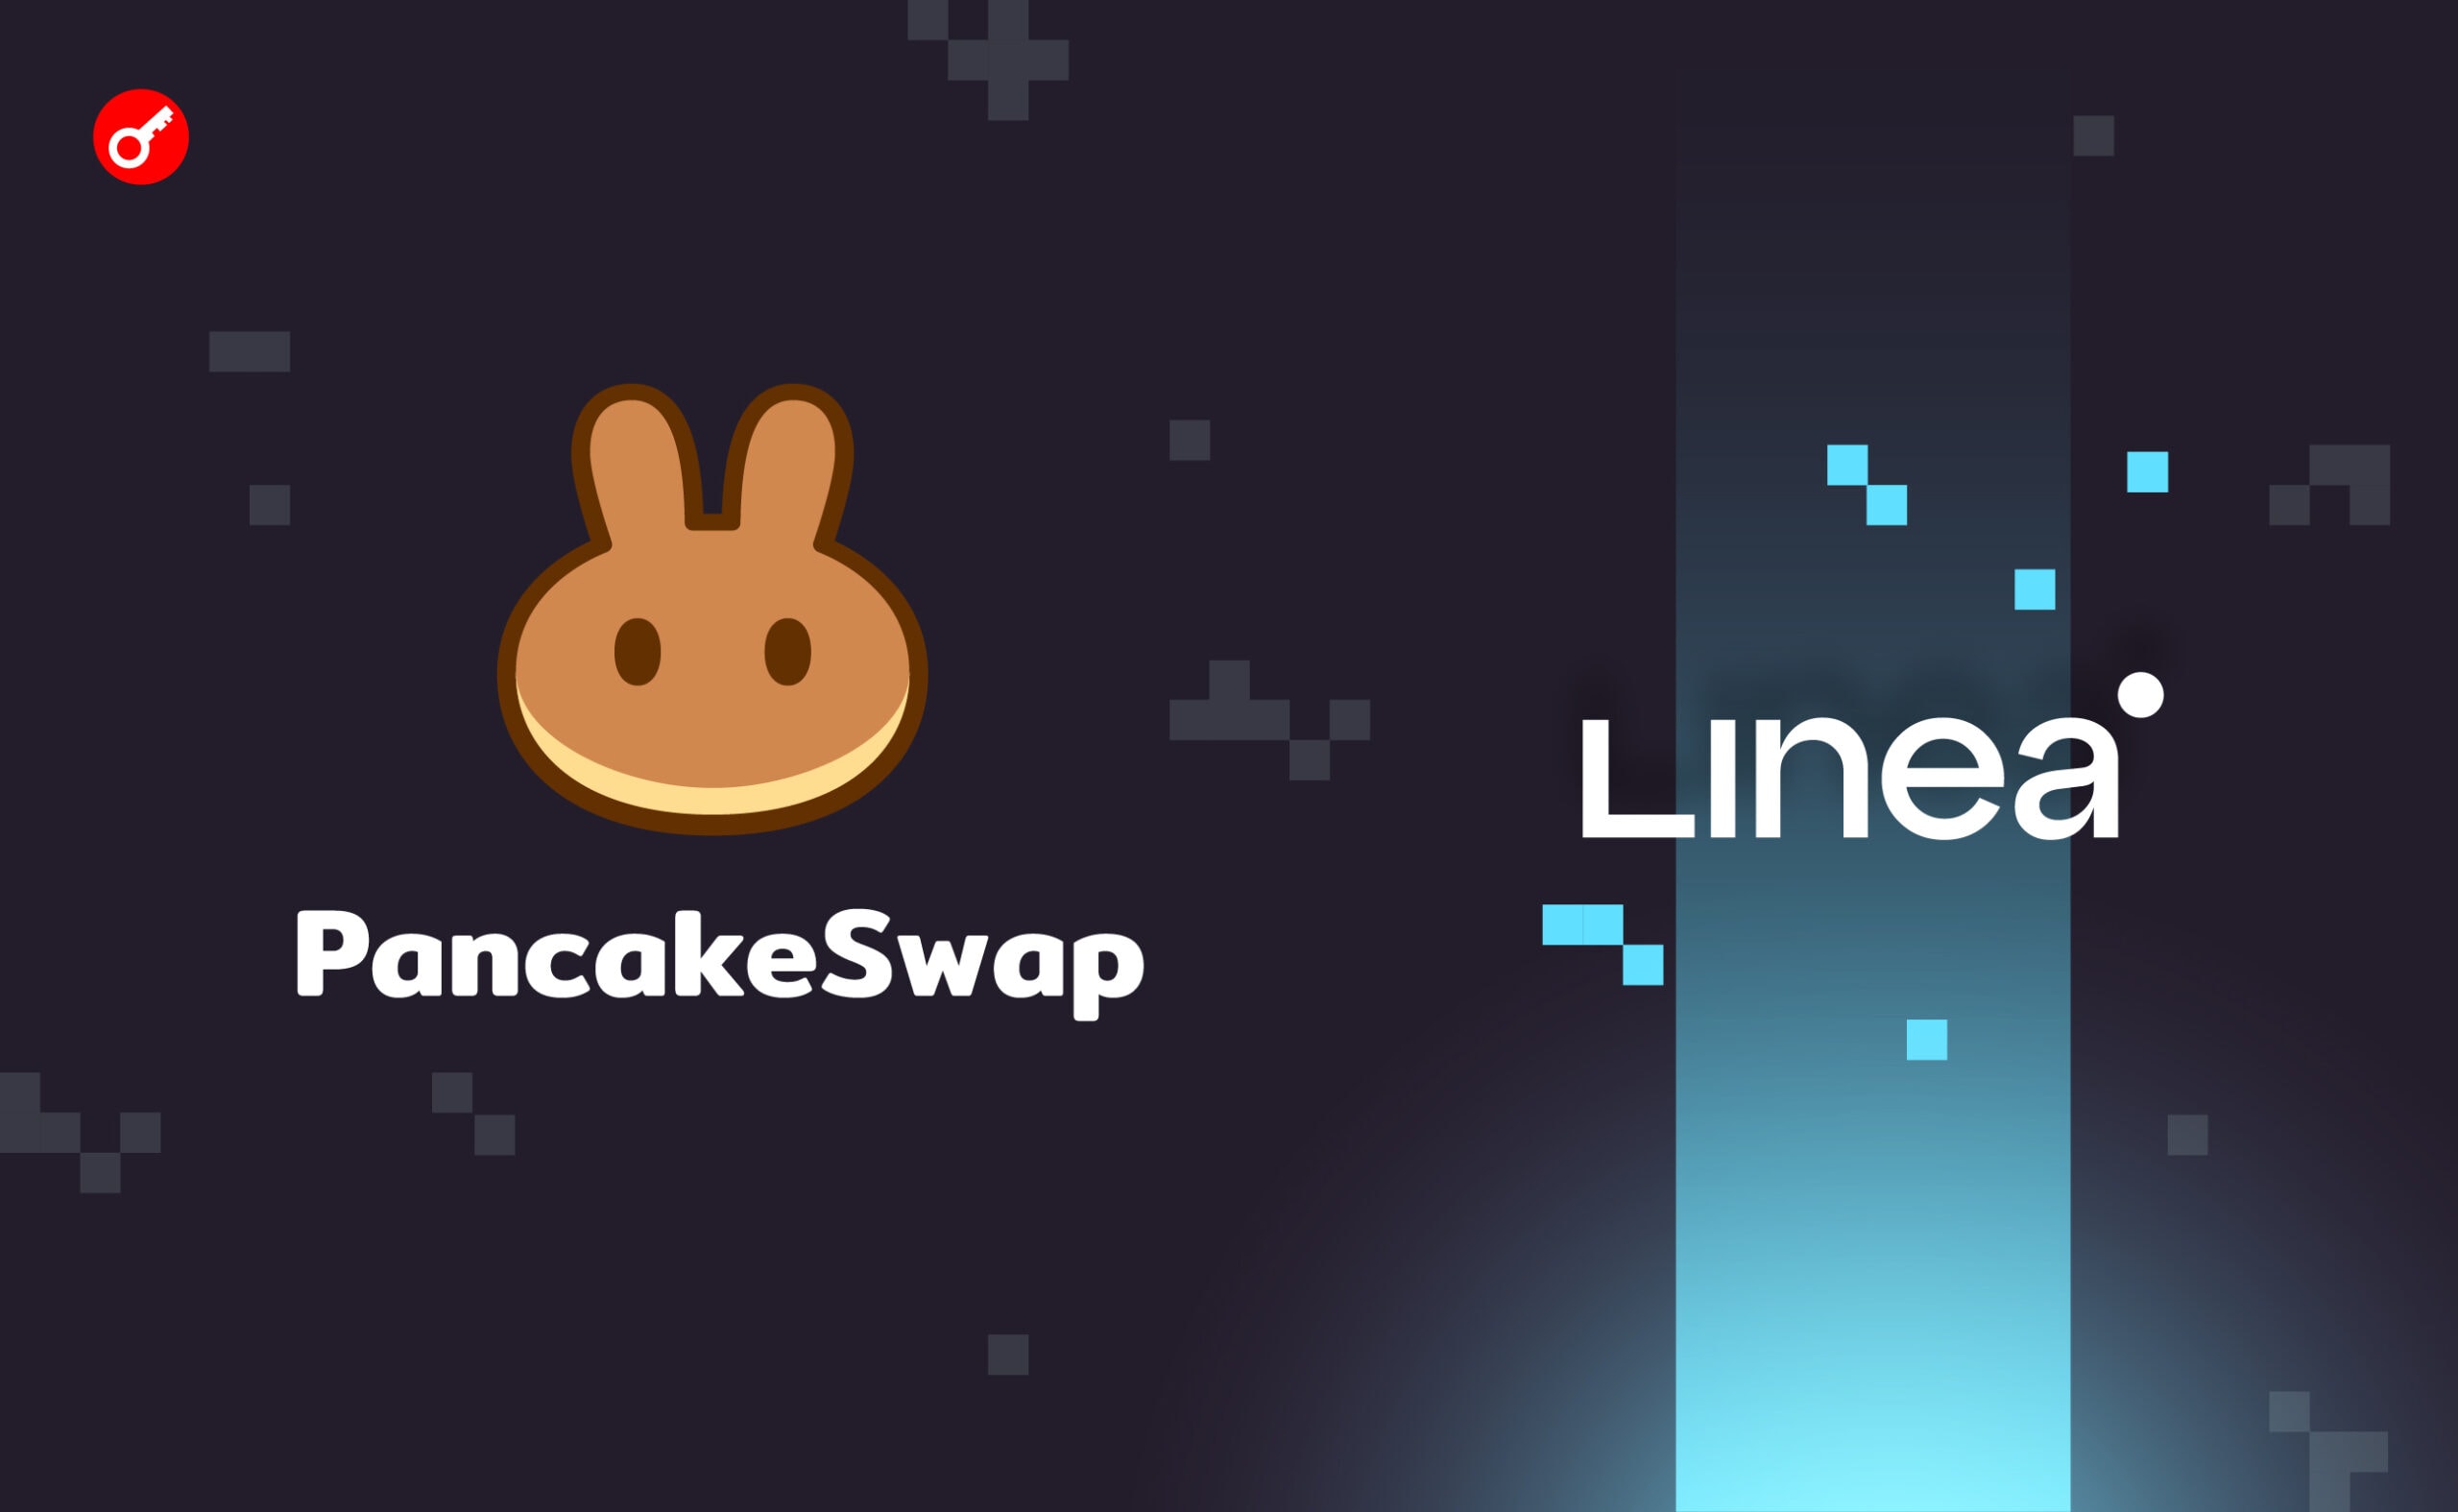 PancakeSwap добавила поддержку Linea. Заглавный коллаж новости.